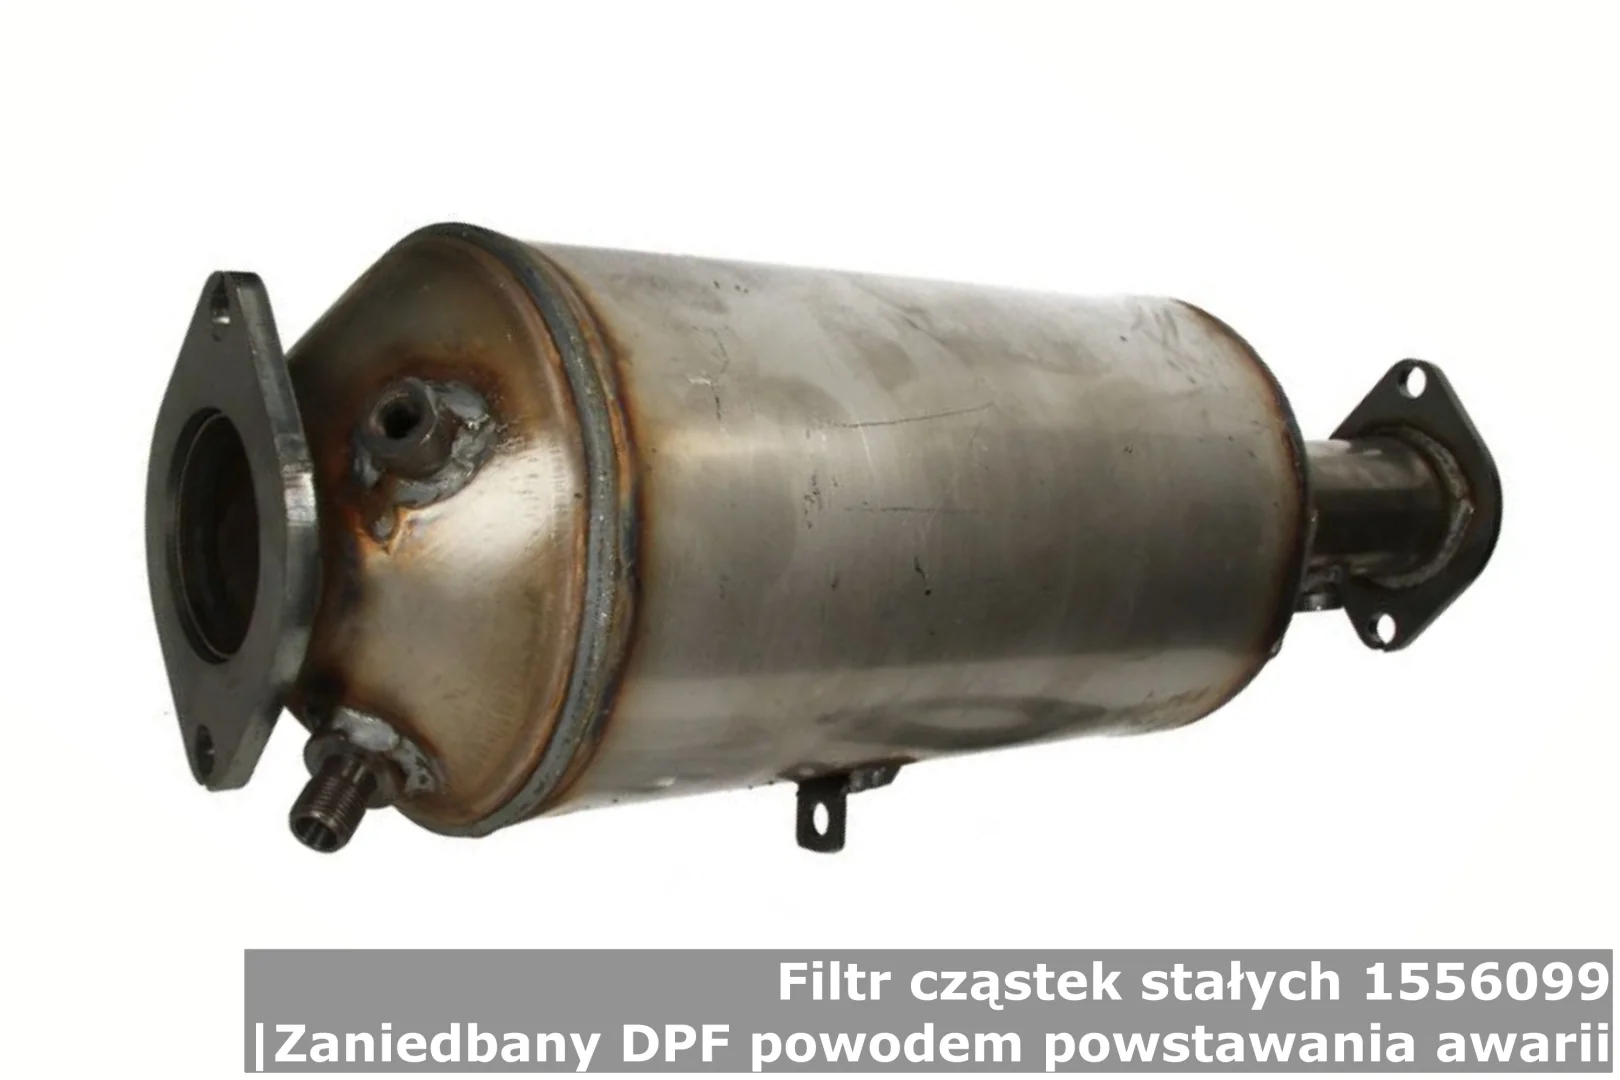 Filtr cząstek stałych 1556099 | Zaniedbany DPF powodem powstawania awarii